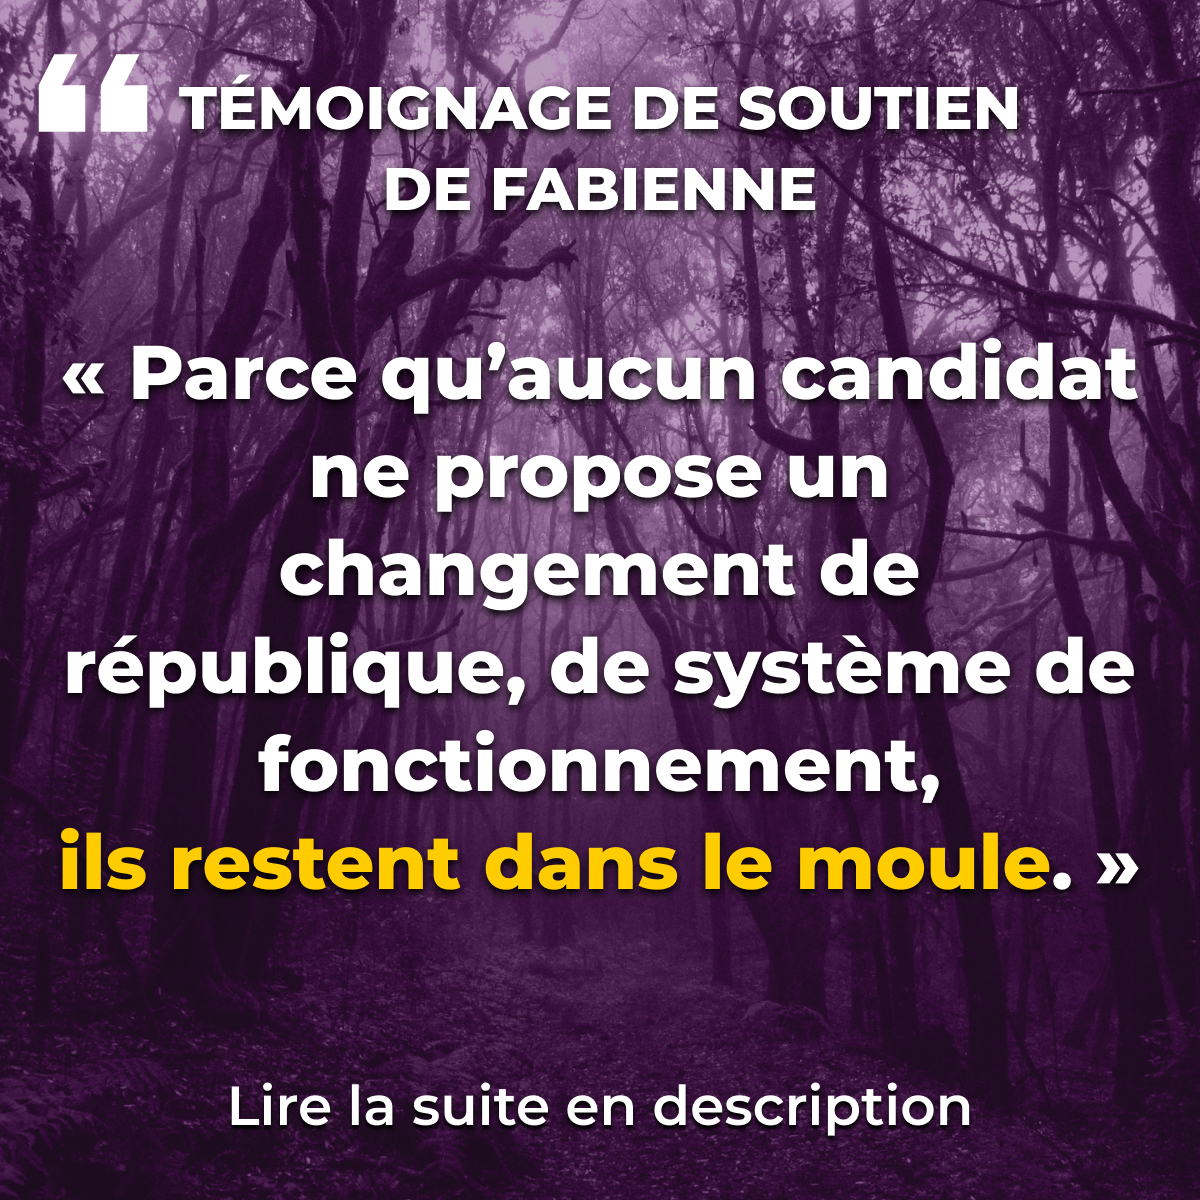 « Parce qu’aucun candidat ne propose un changement de république, de système de fonctionnement, ils restent dans le moule. »